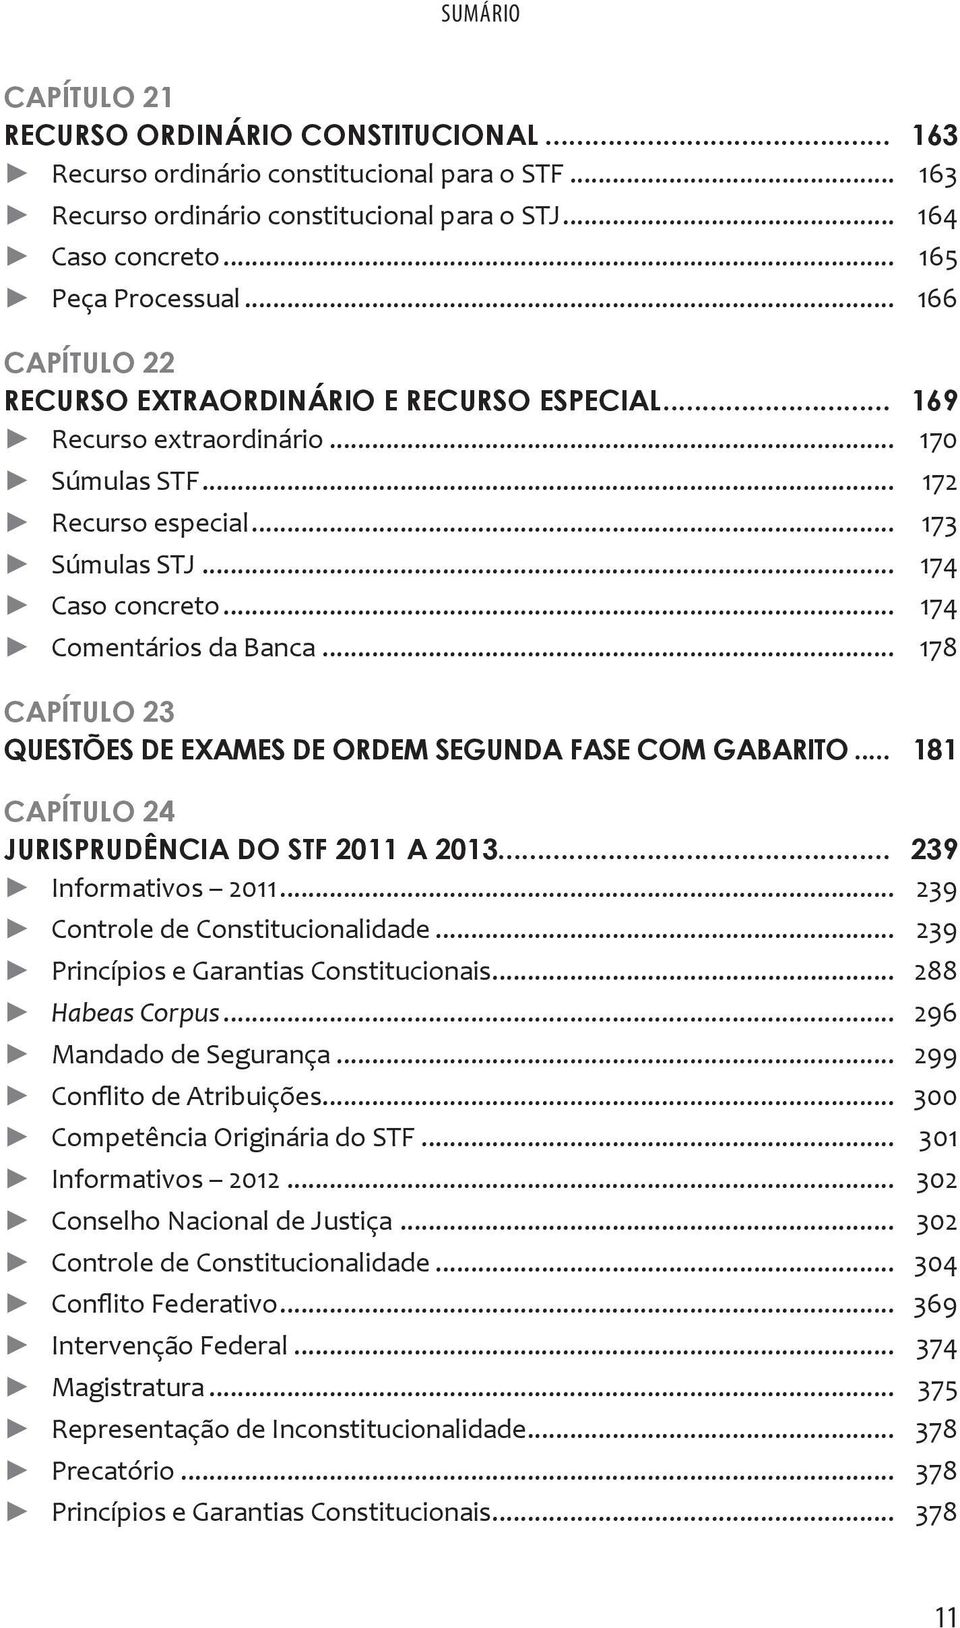 .. 178 CAPÍTULO 23 QUESTÕES DE EXAMES DE ORDEM SEGUNDA FASE COM GABARITO... 181 CAPÍTULO 24 JURISPRUDÊNCIA DO STF 2011 A 2013... 239 Informativos 2011... 239 Controle de Constitucionalidade.